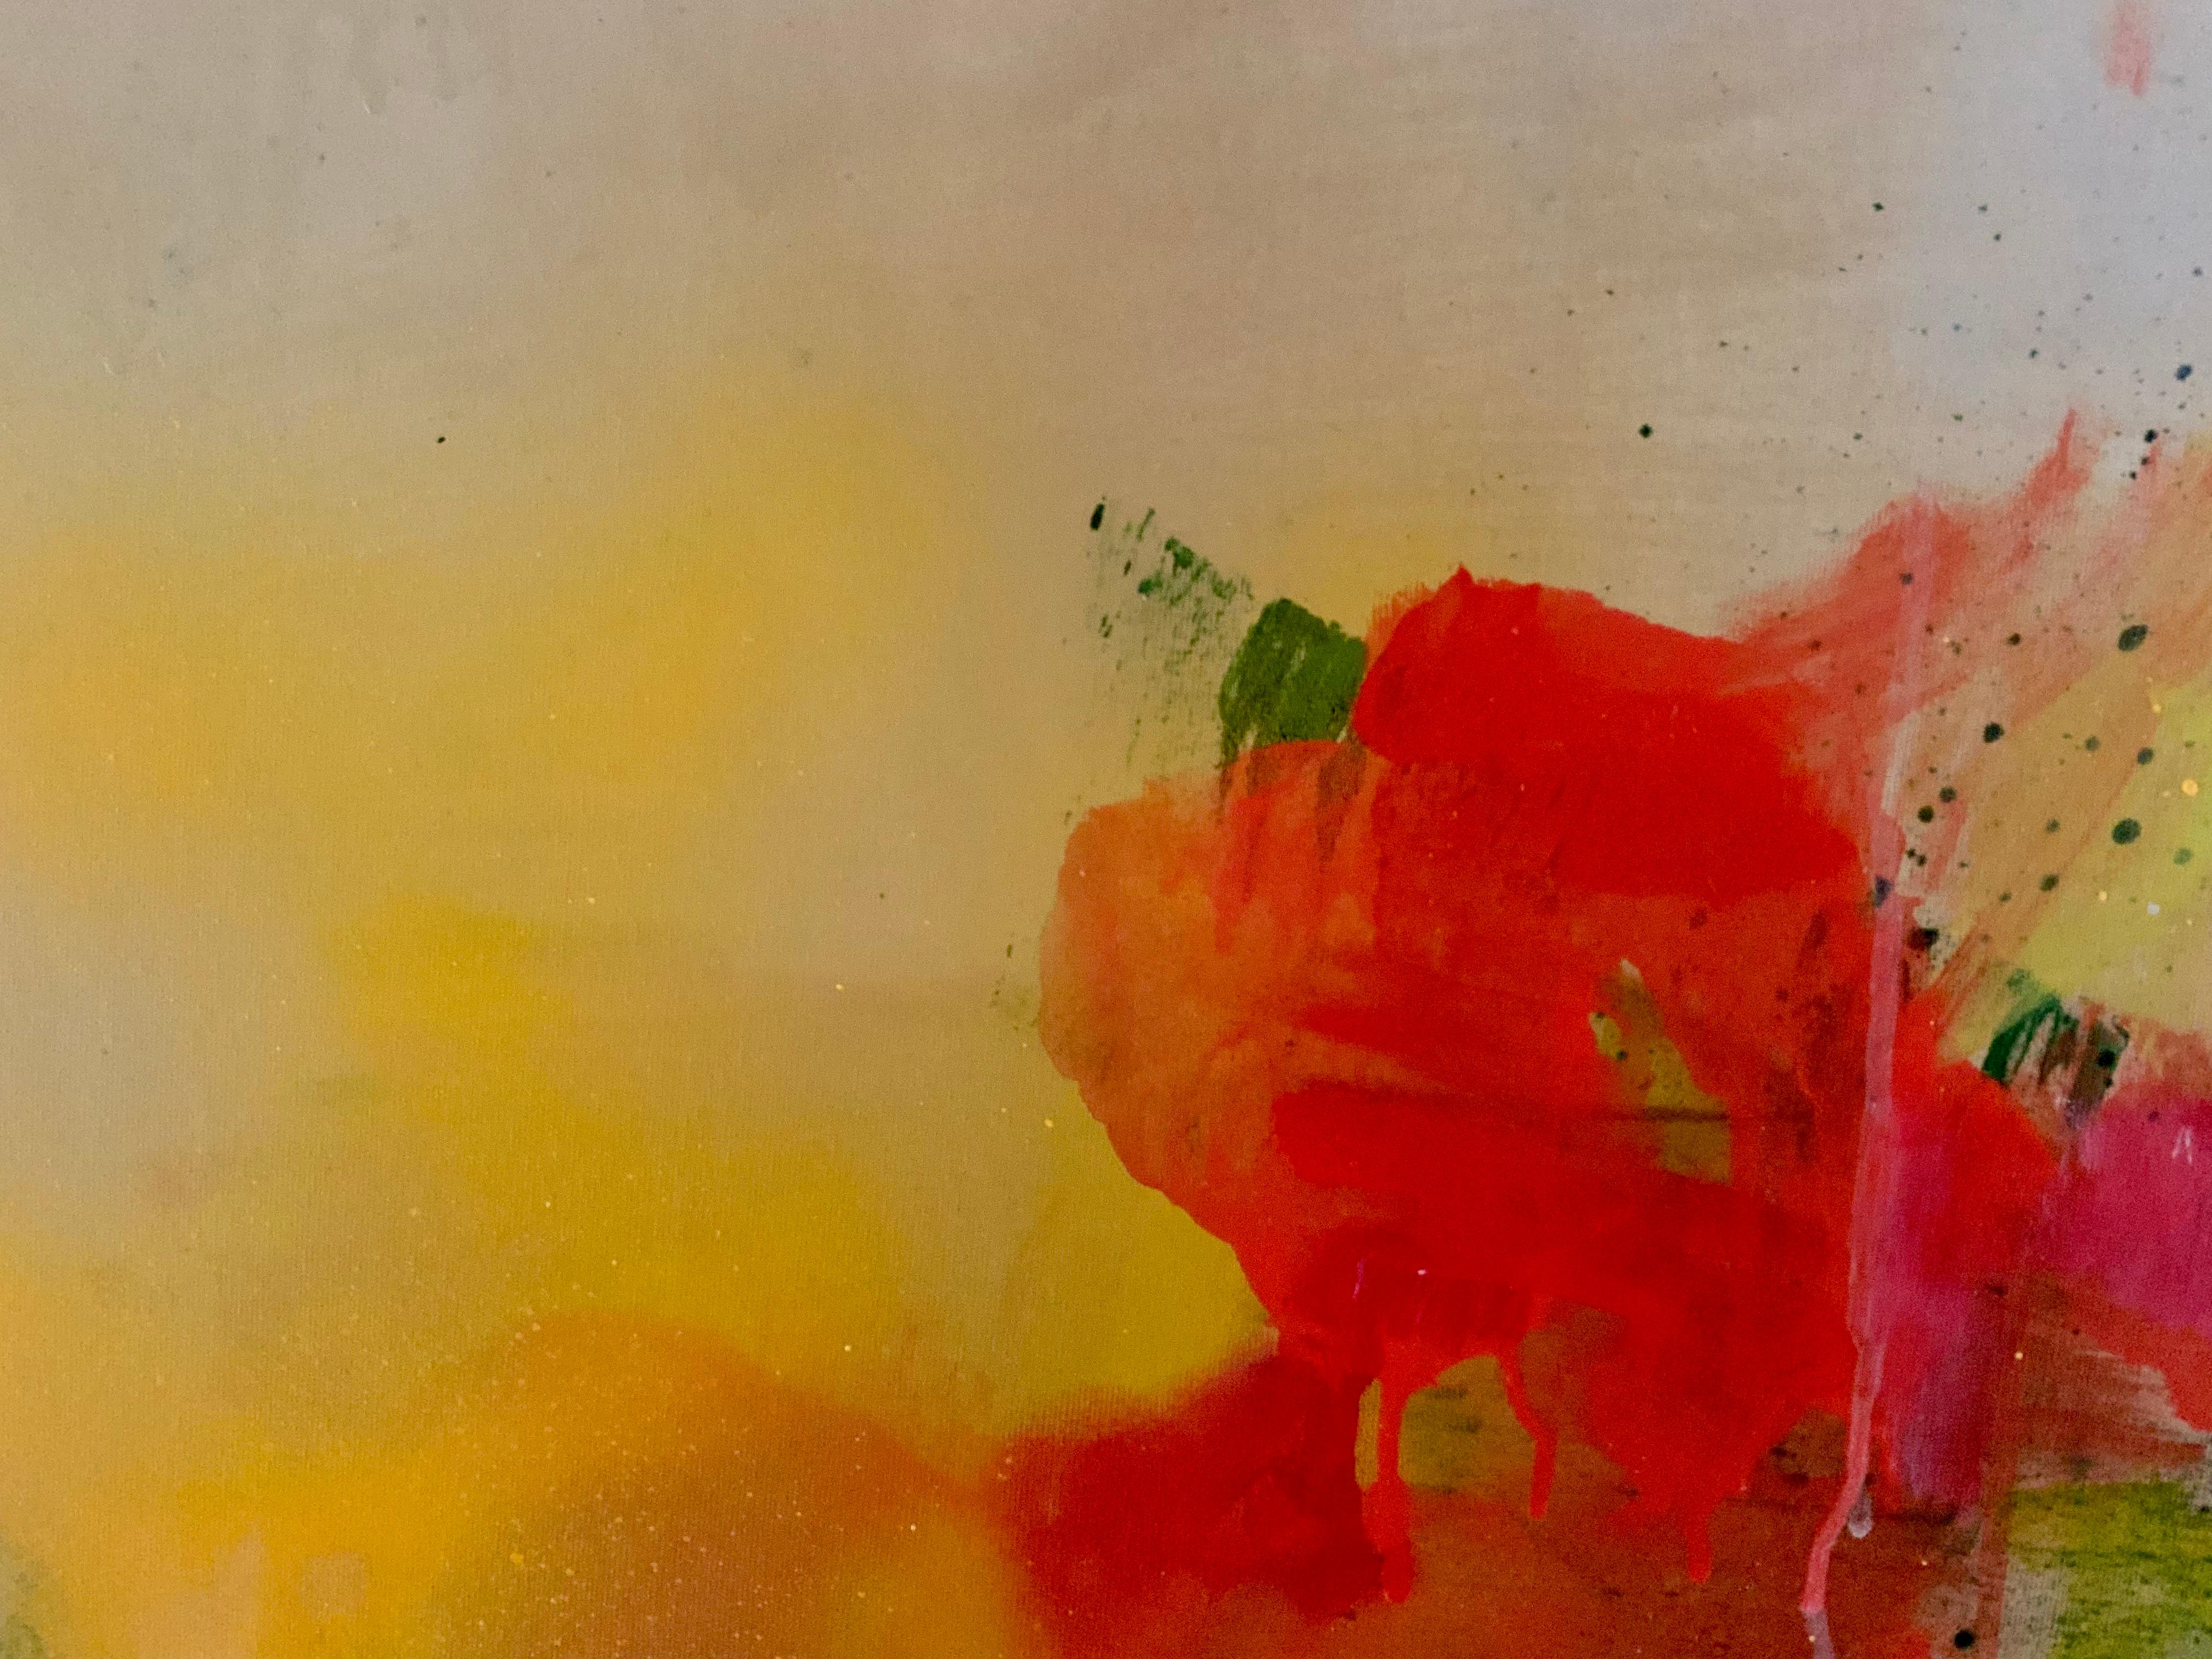 Großes abstraktes modernes Gemälde in kräftigen Farben in Rot, Türkis, Orange und Grün.  (Abstrakter Expressionismus), Mixed Media Art, von Michele Zuzalek